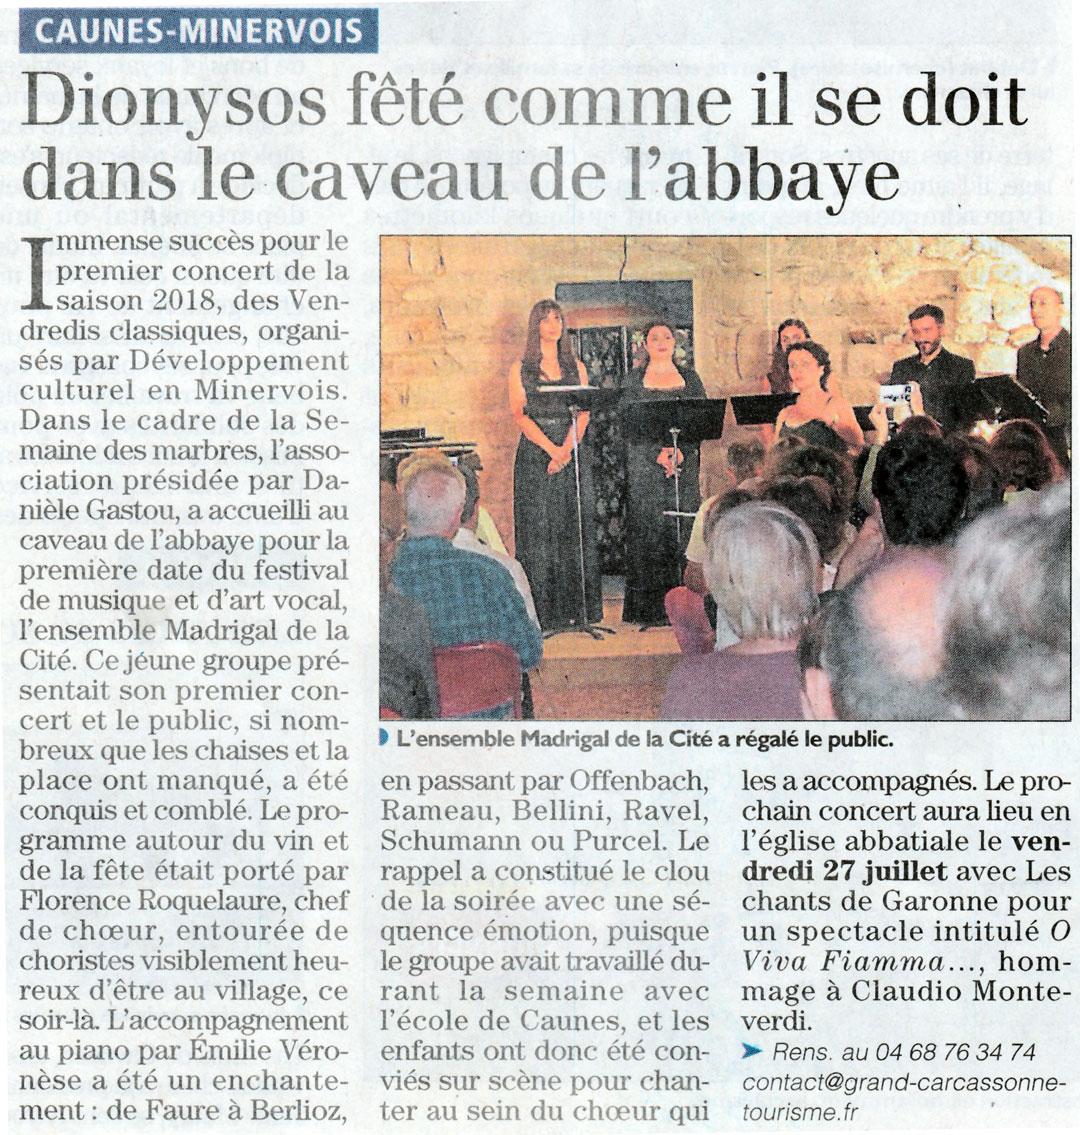 Article "Dionysos fêté comme il se doit dans le caveau de l'abbaye" - L'Indépendant (14-06-18) - ©Madrigal de la Cité